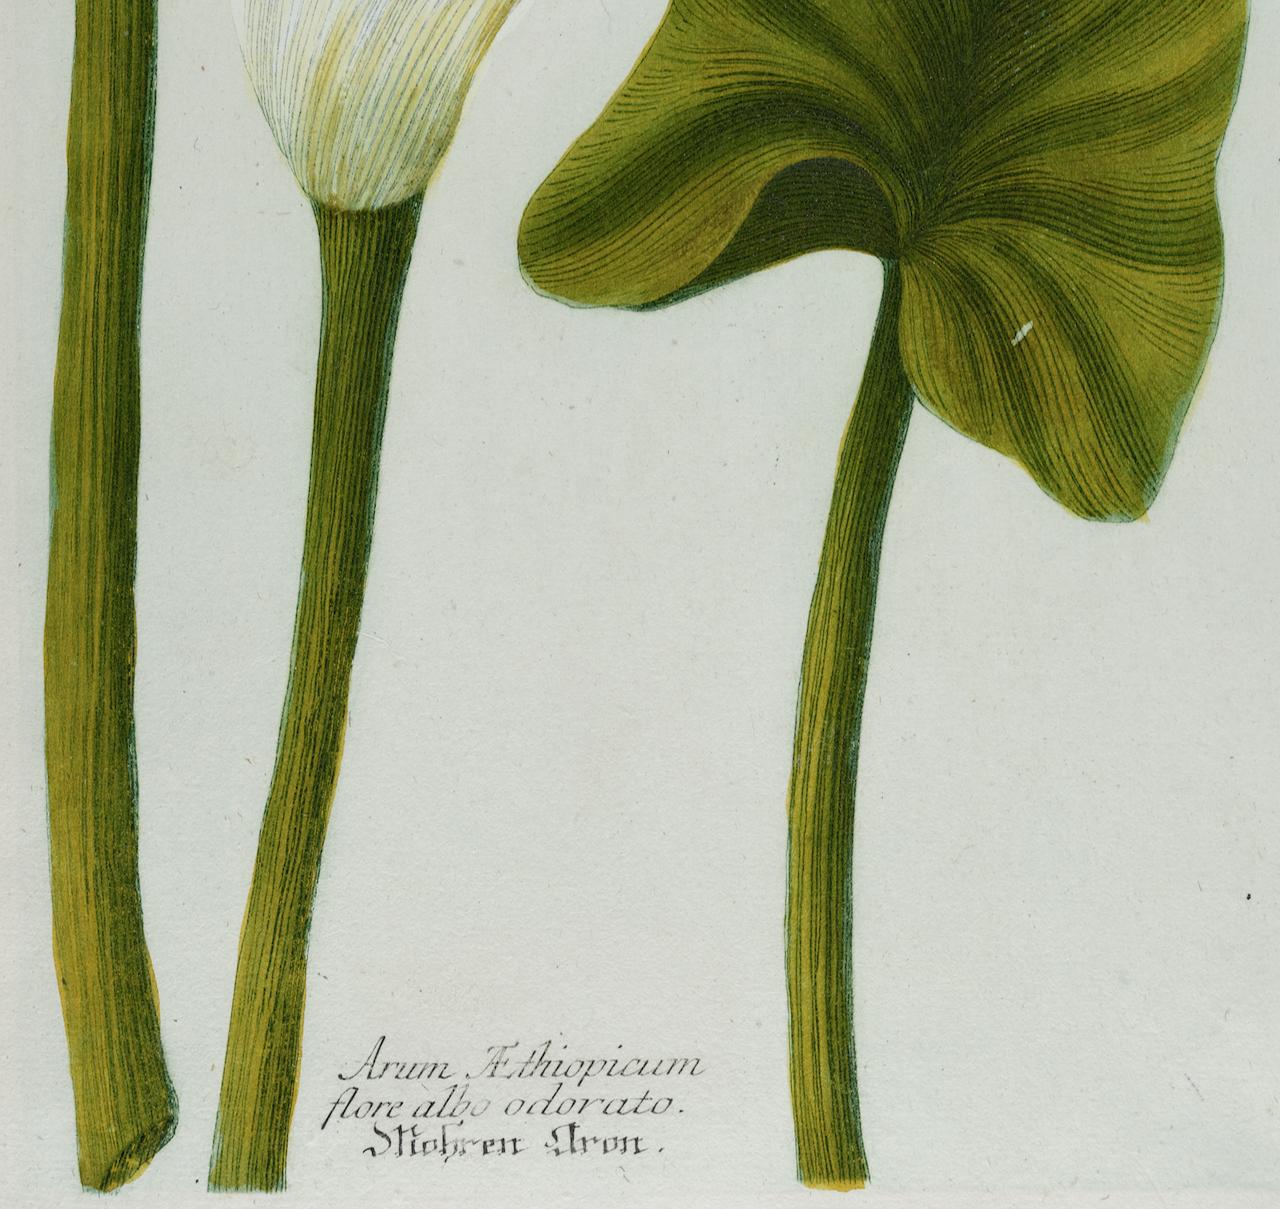 Dies ist ein schönes Original antike botanische Schabkunst und Linie Gravur einer blühenden Calla Lily, die mit Hand-Kolorierung abgeschlossen ist. Es trägt den Titel 